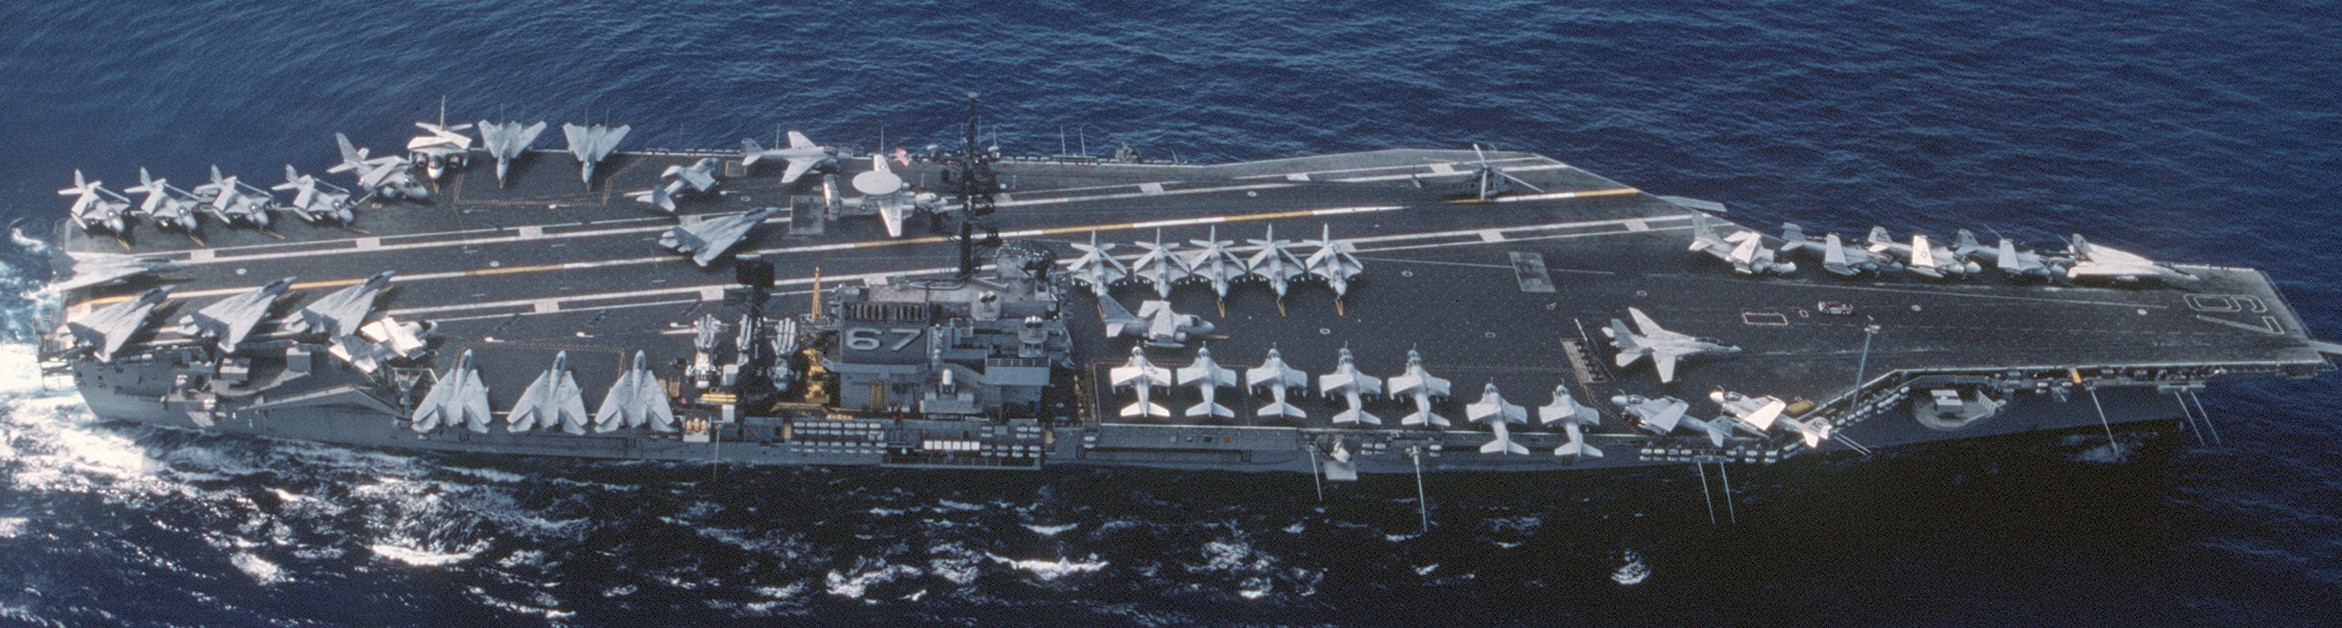 cv-67 uss john f. kennedy aircraft carrier air wing cvw-3 us navy 1988 115